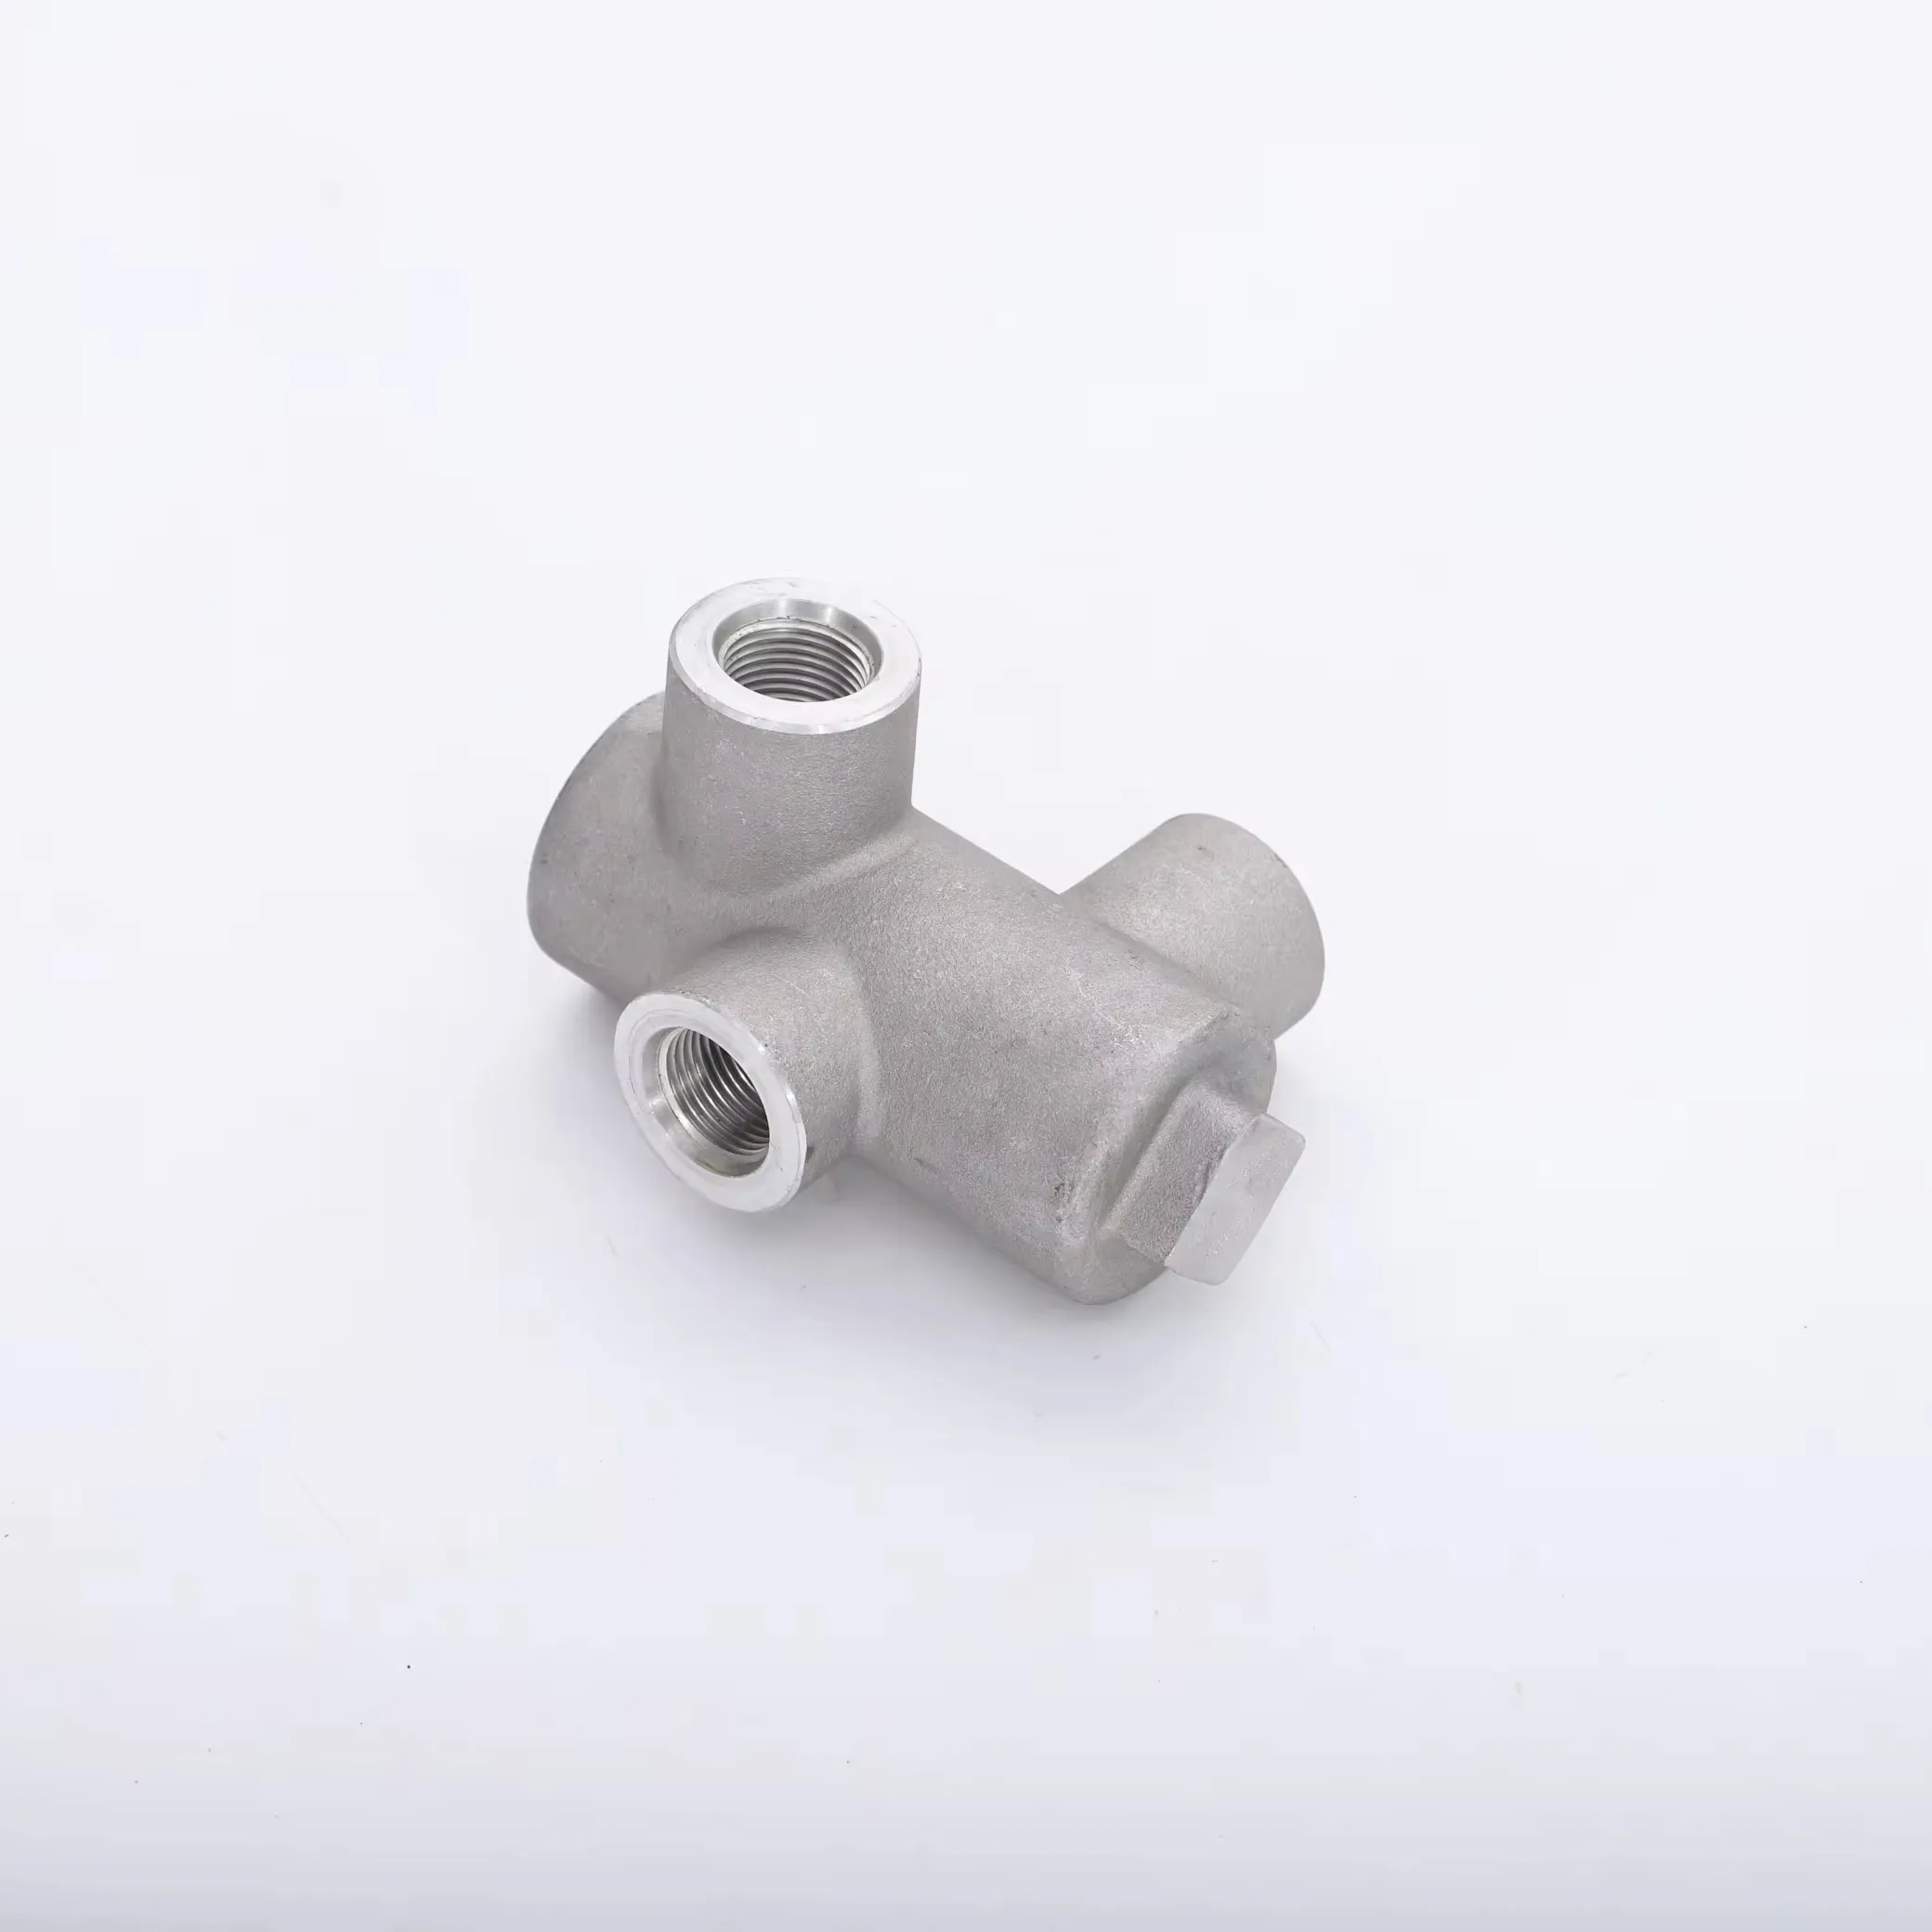 Compressor parts temperature control valve housings 22456214 for ingersoll rand Air-Compressor parts